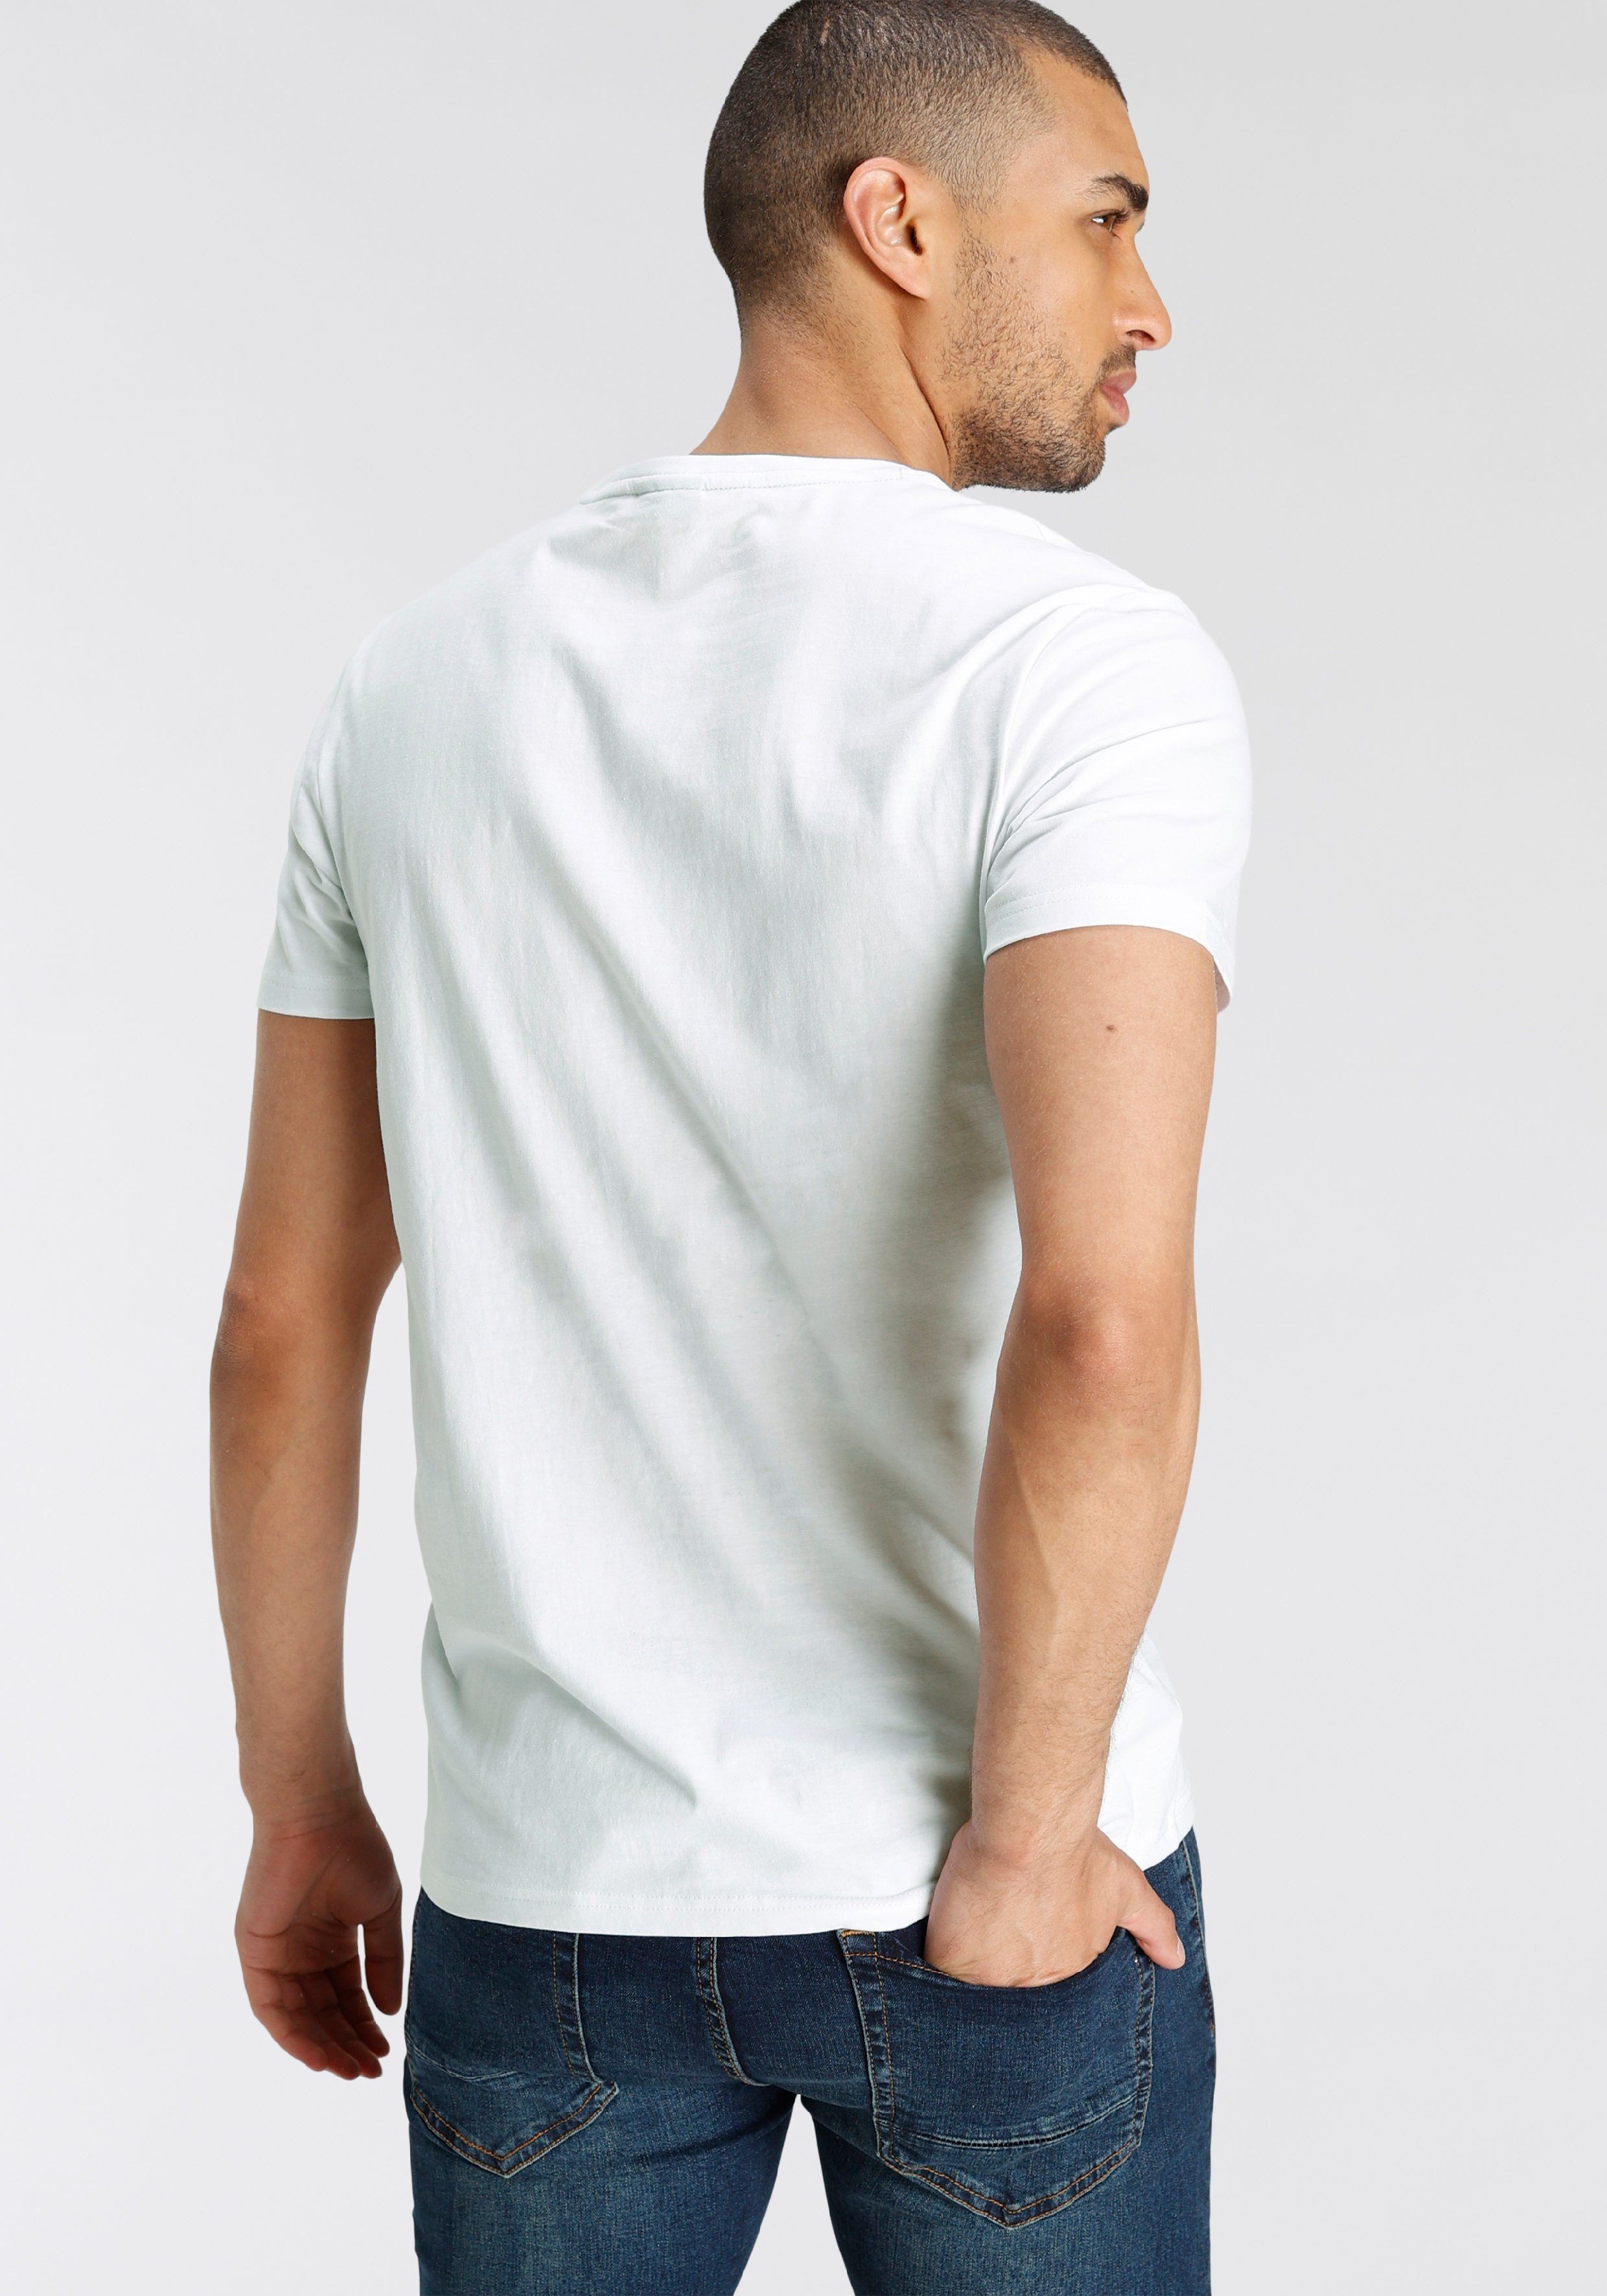 Bruno Banani T-Shirt glänzendem weiß mit Print